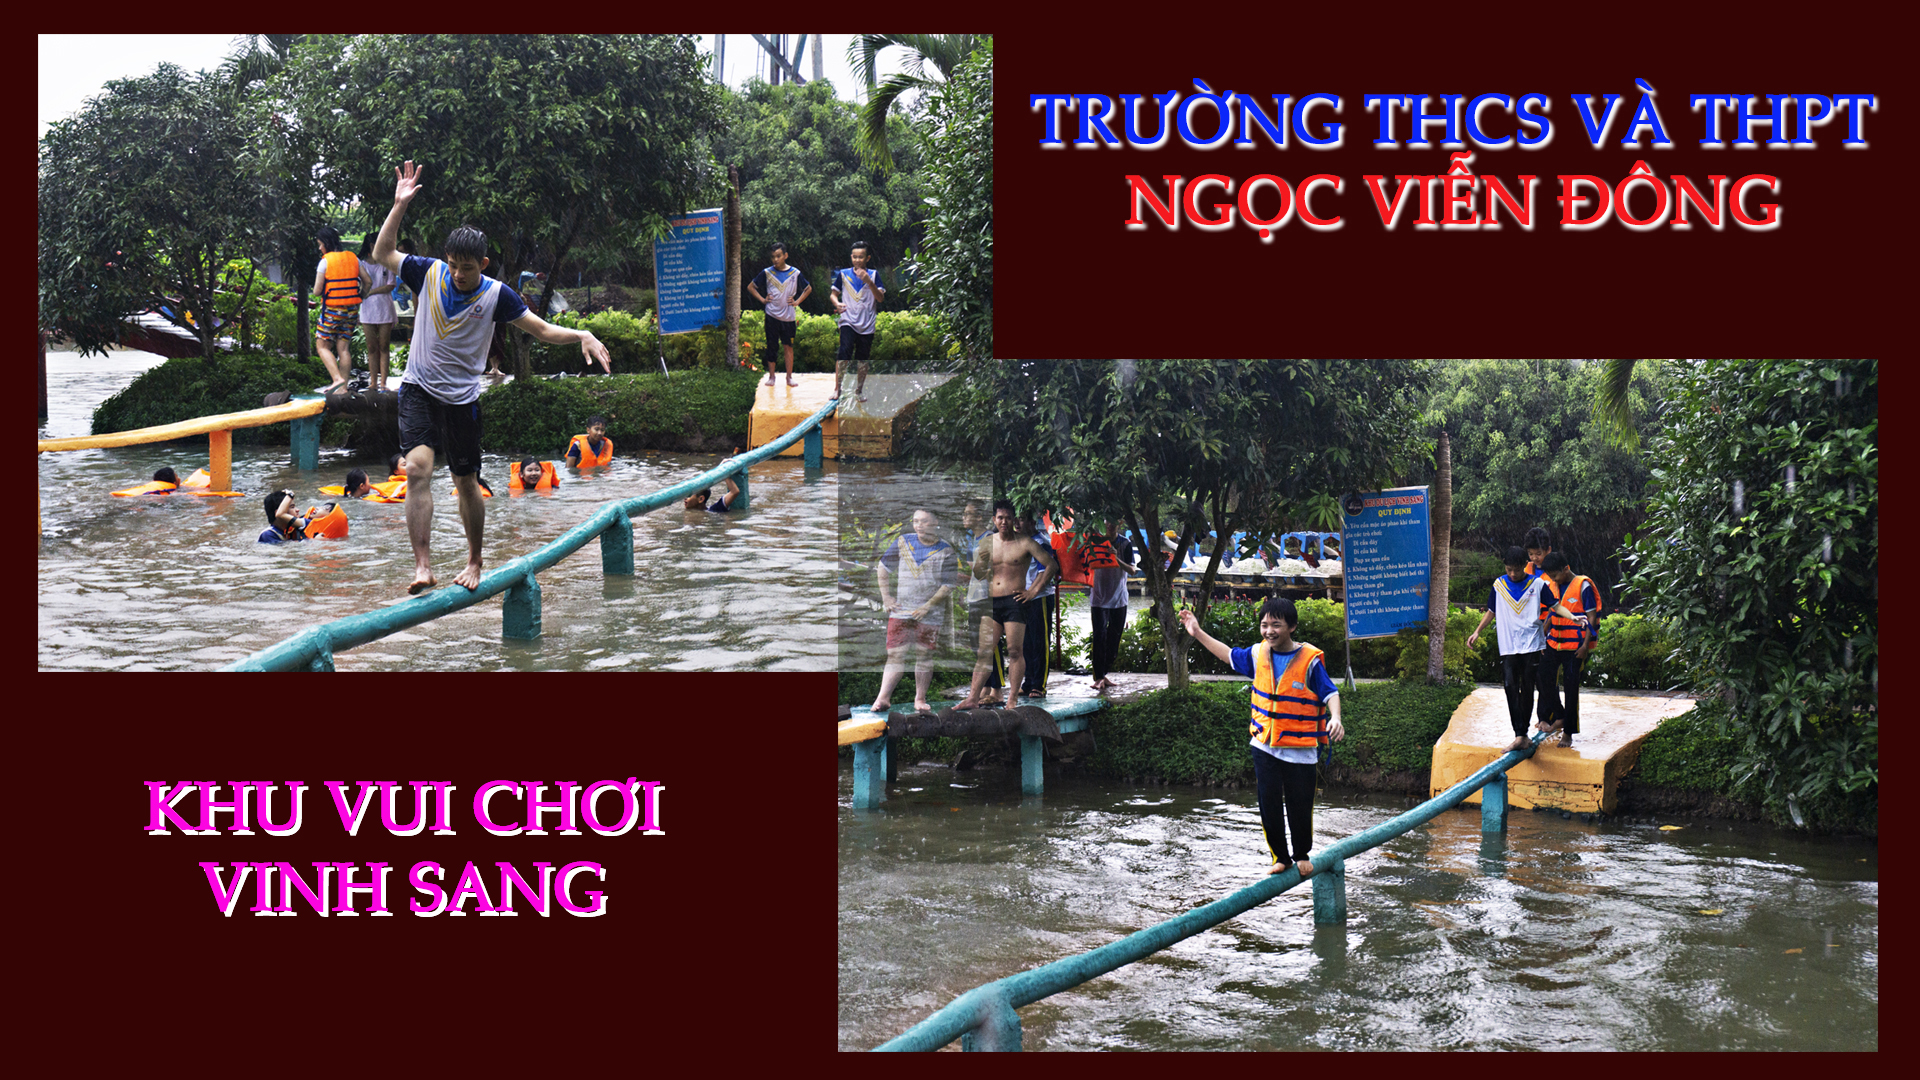 Học sinh trường THCS và THPT Ngọc Viễn Đông chơi trò chơi tập thể tại khu du lịch Vinh Sang Vĩnh Long